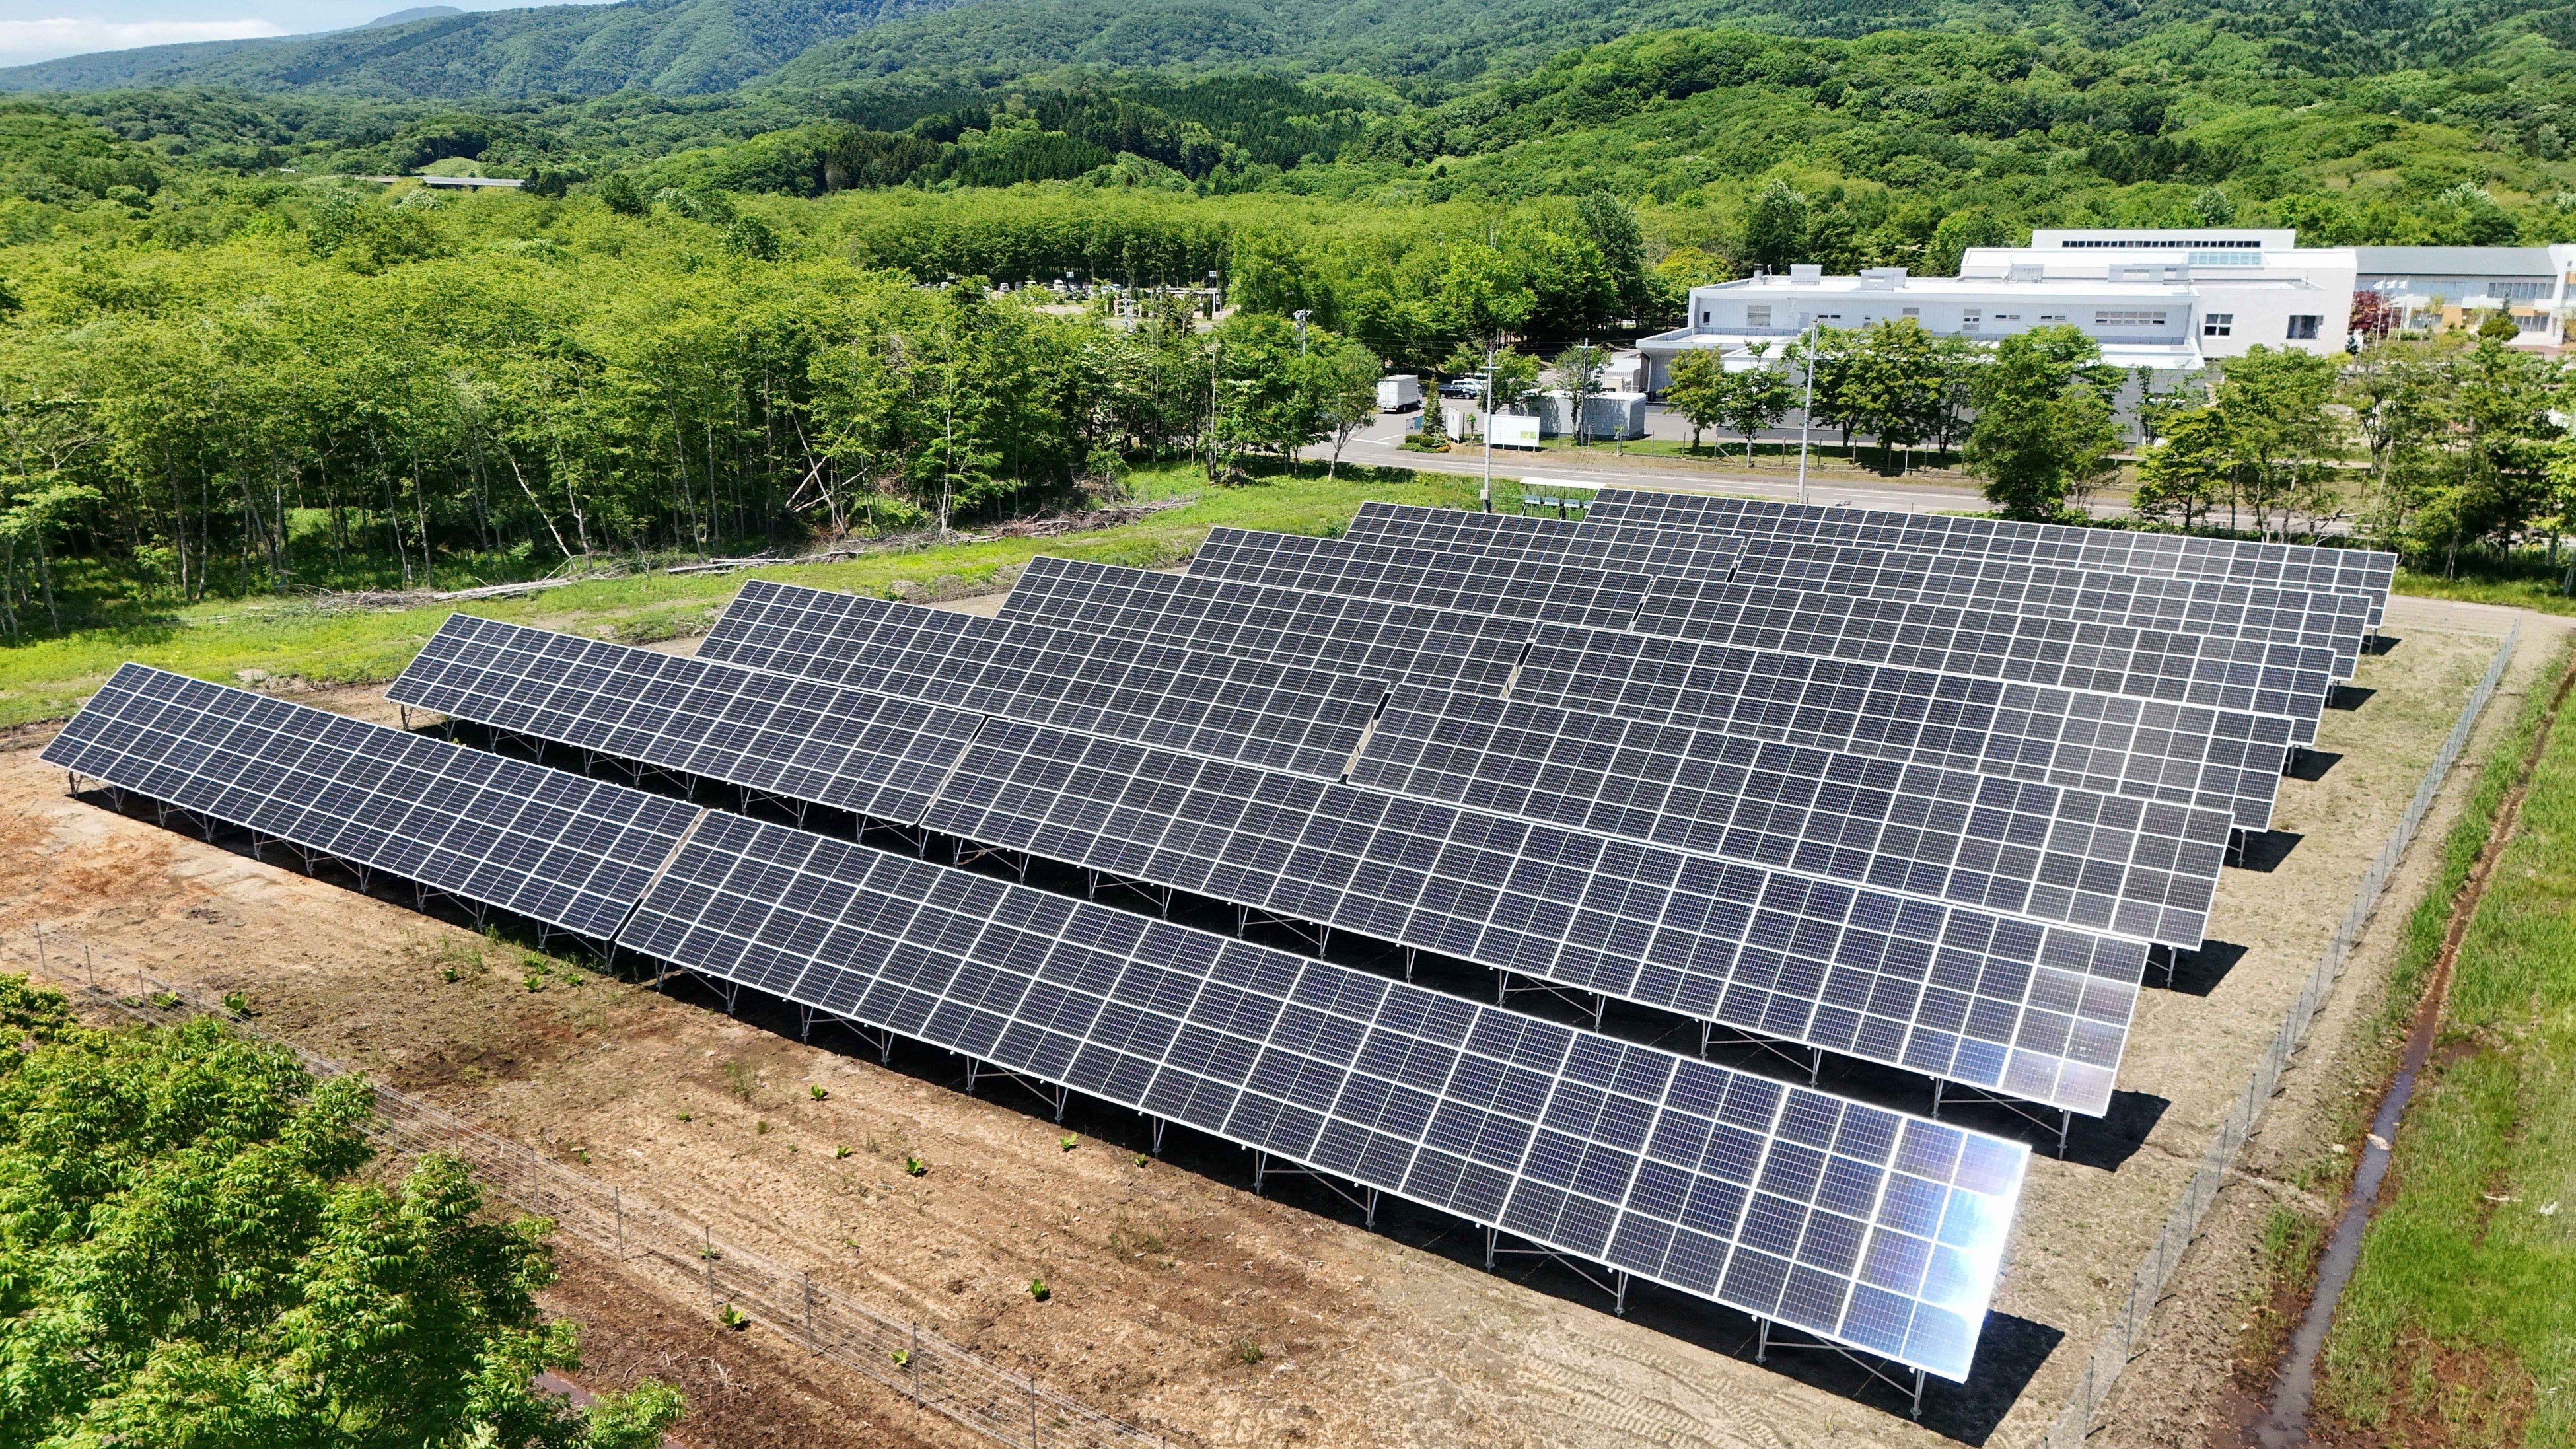 ナチュラルサイエンス様の自家消費型太陽光発電設備運用開始のお知らせ